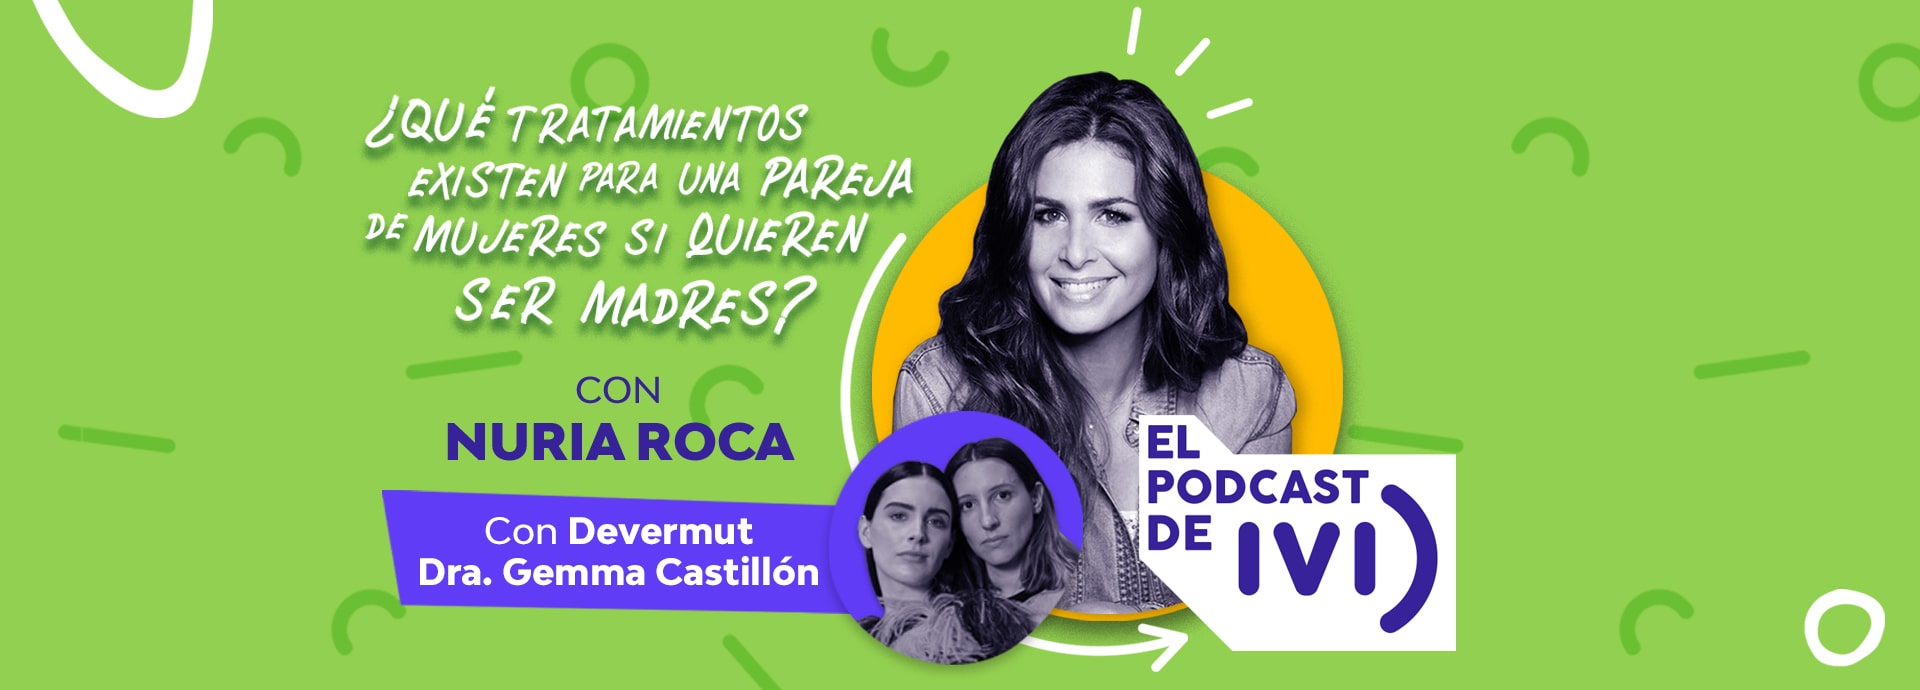 El podcast de IVI con Nuria Roca ep 04: ¿Qué tratamientos existen para una pareja de mujeres si quieren ser madres?